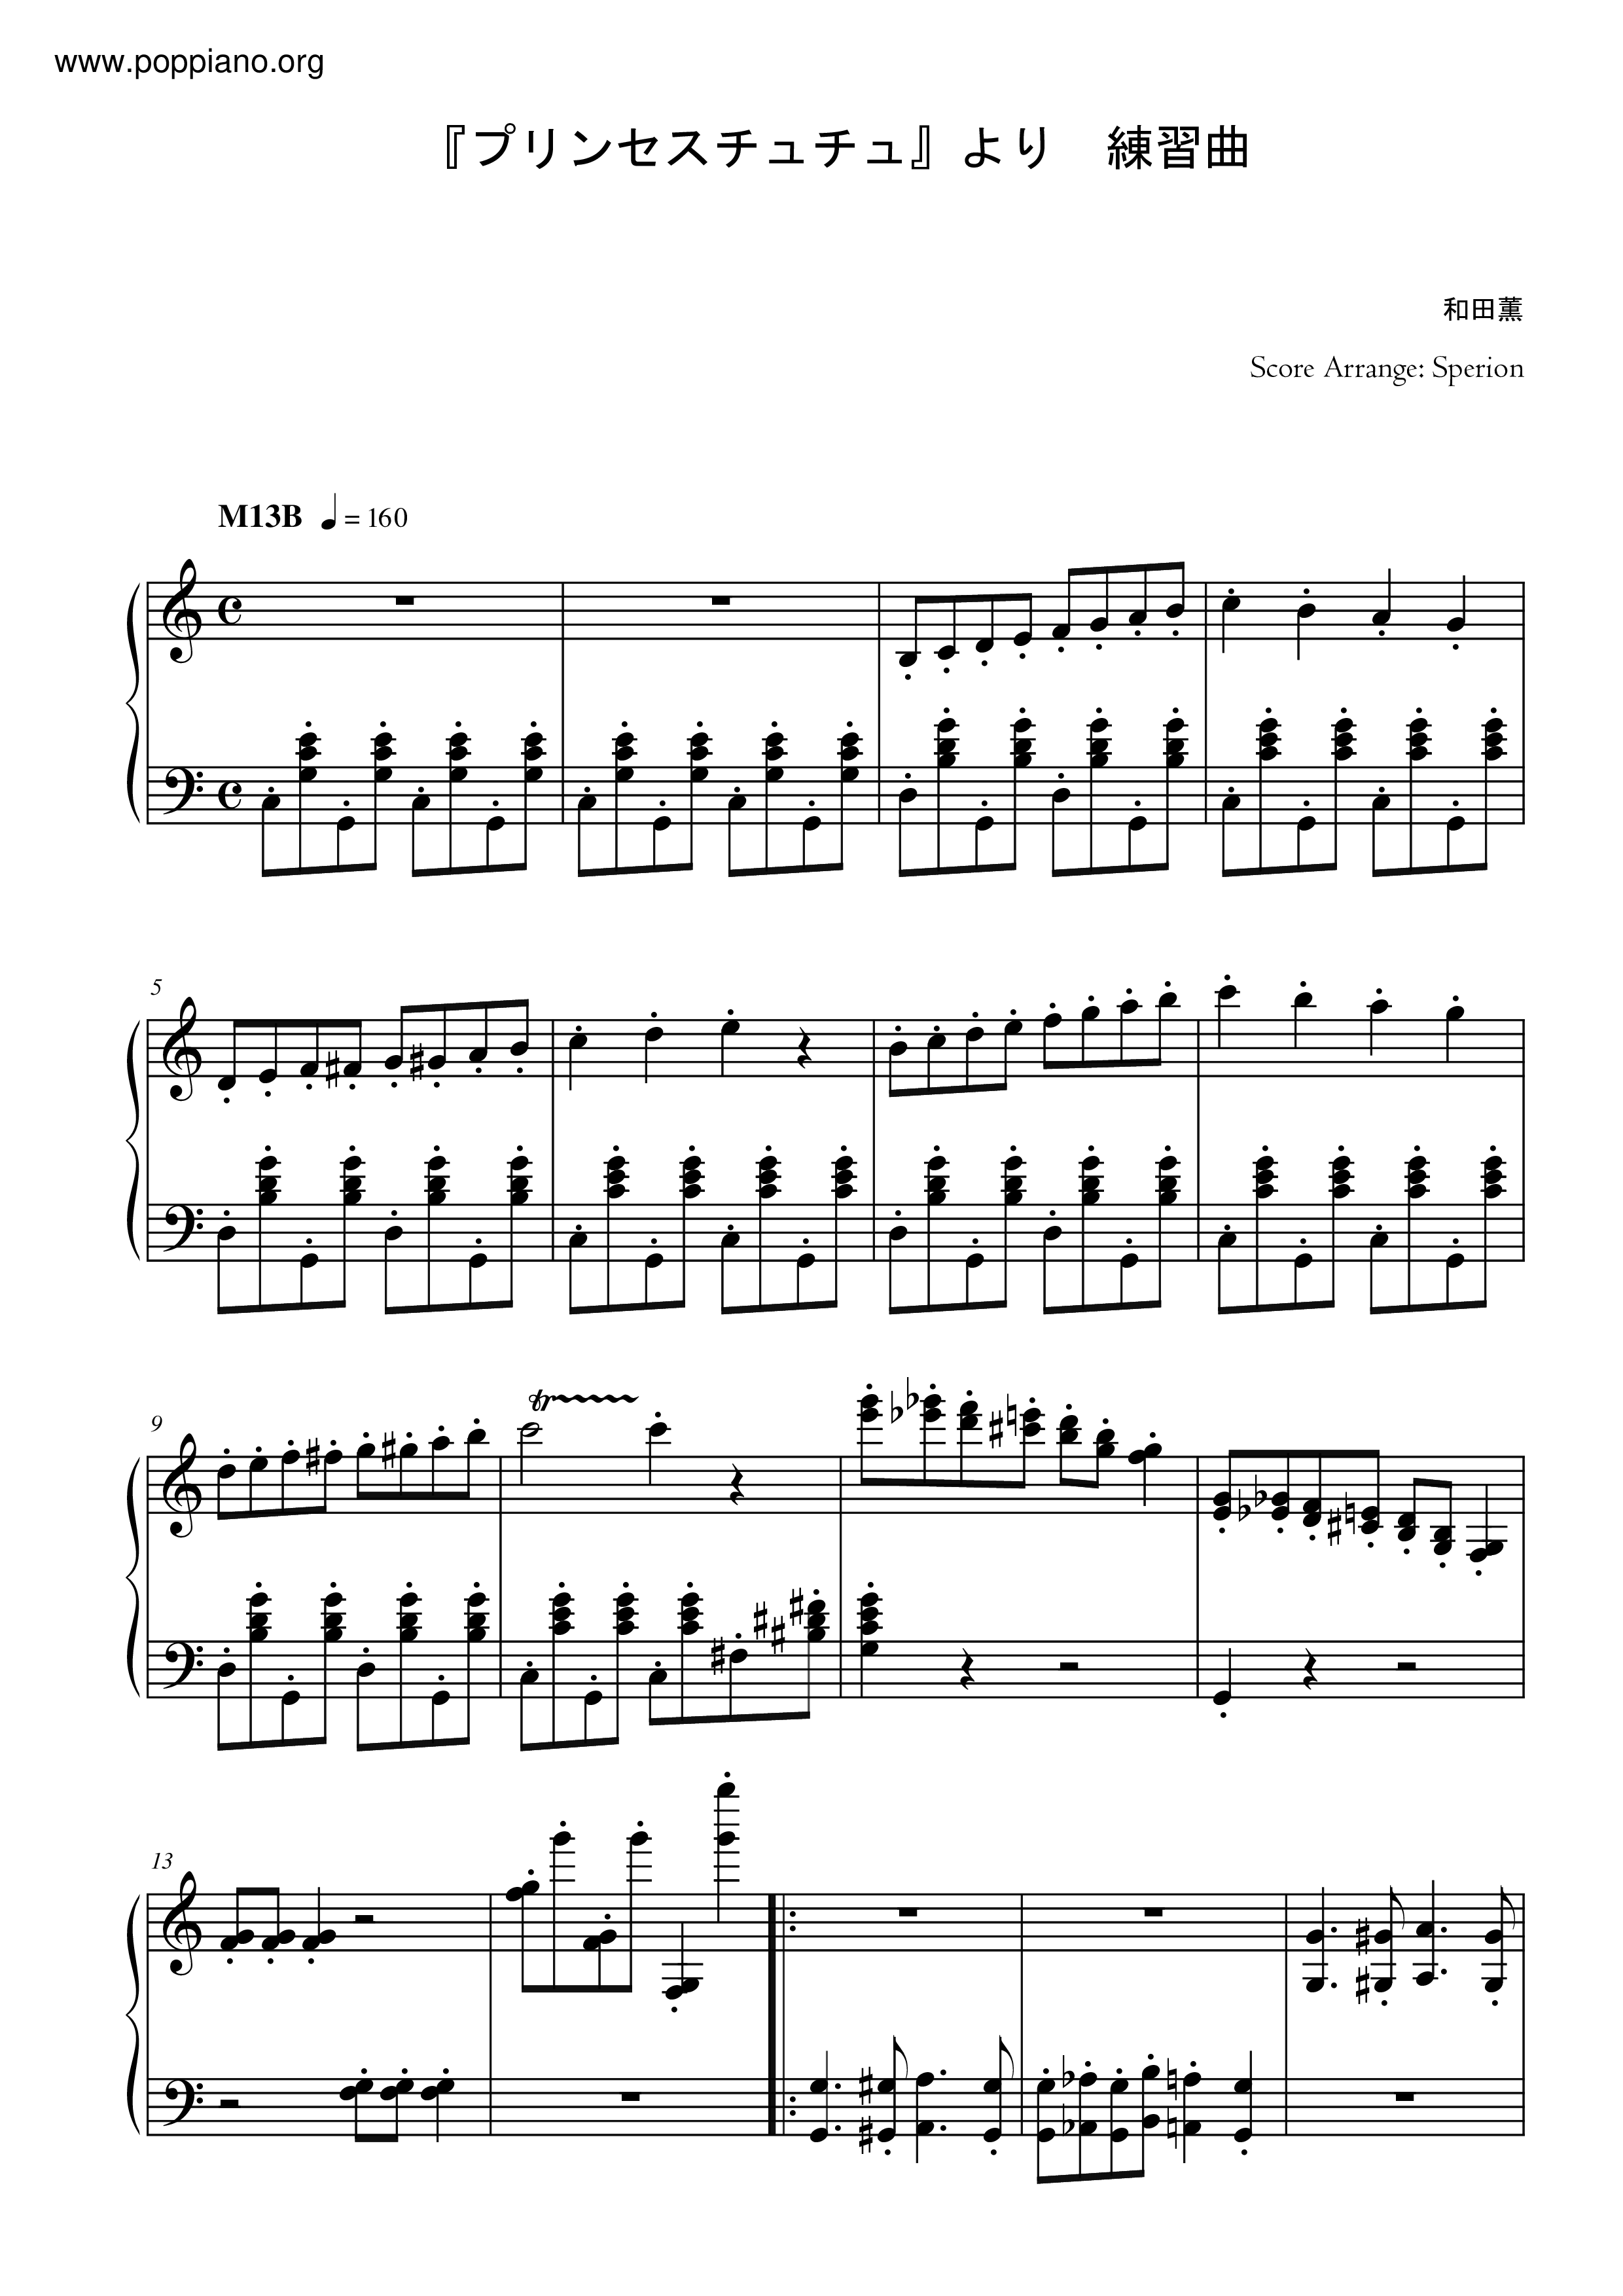 練習曲 (Etude) M13~M14~M21 Score